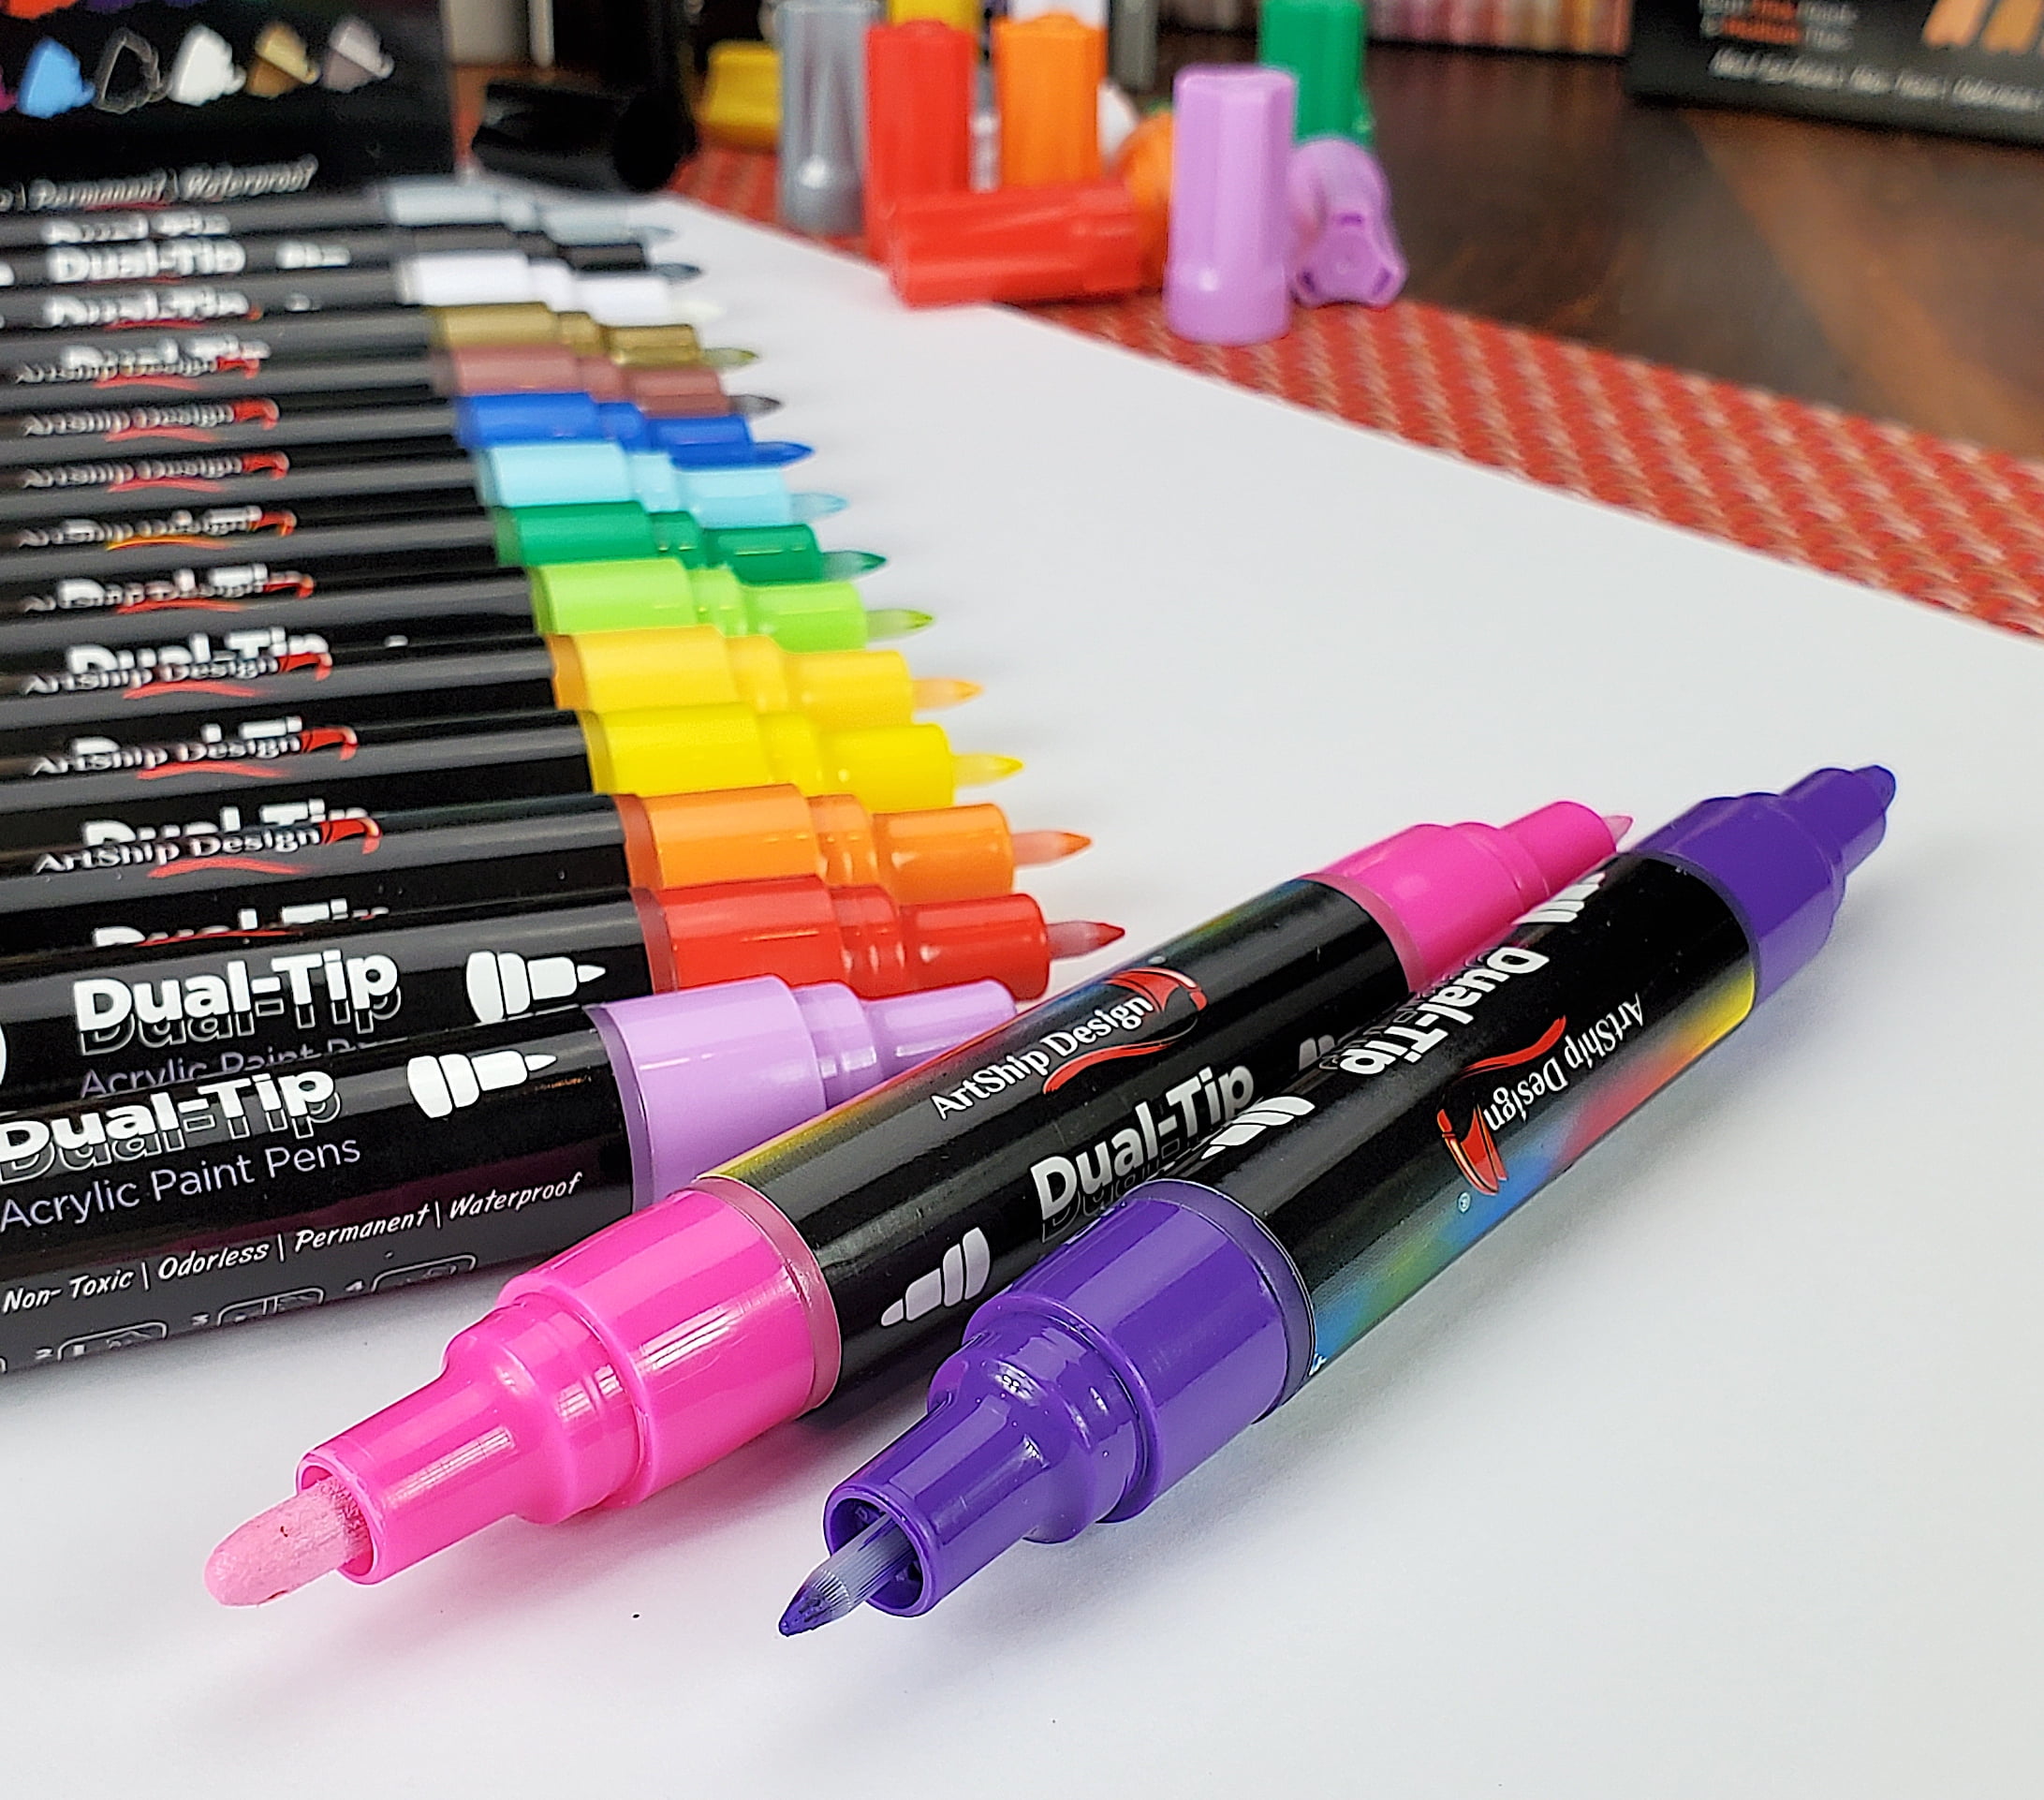 $4/mo - Finance DEYONI 35Pack Acrylic Paint Pens,Paint Pens